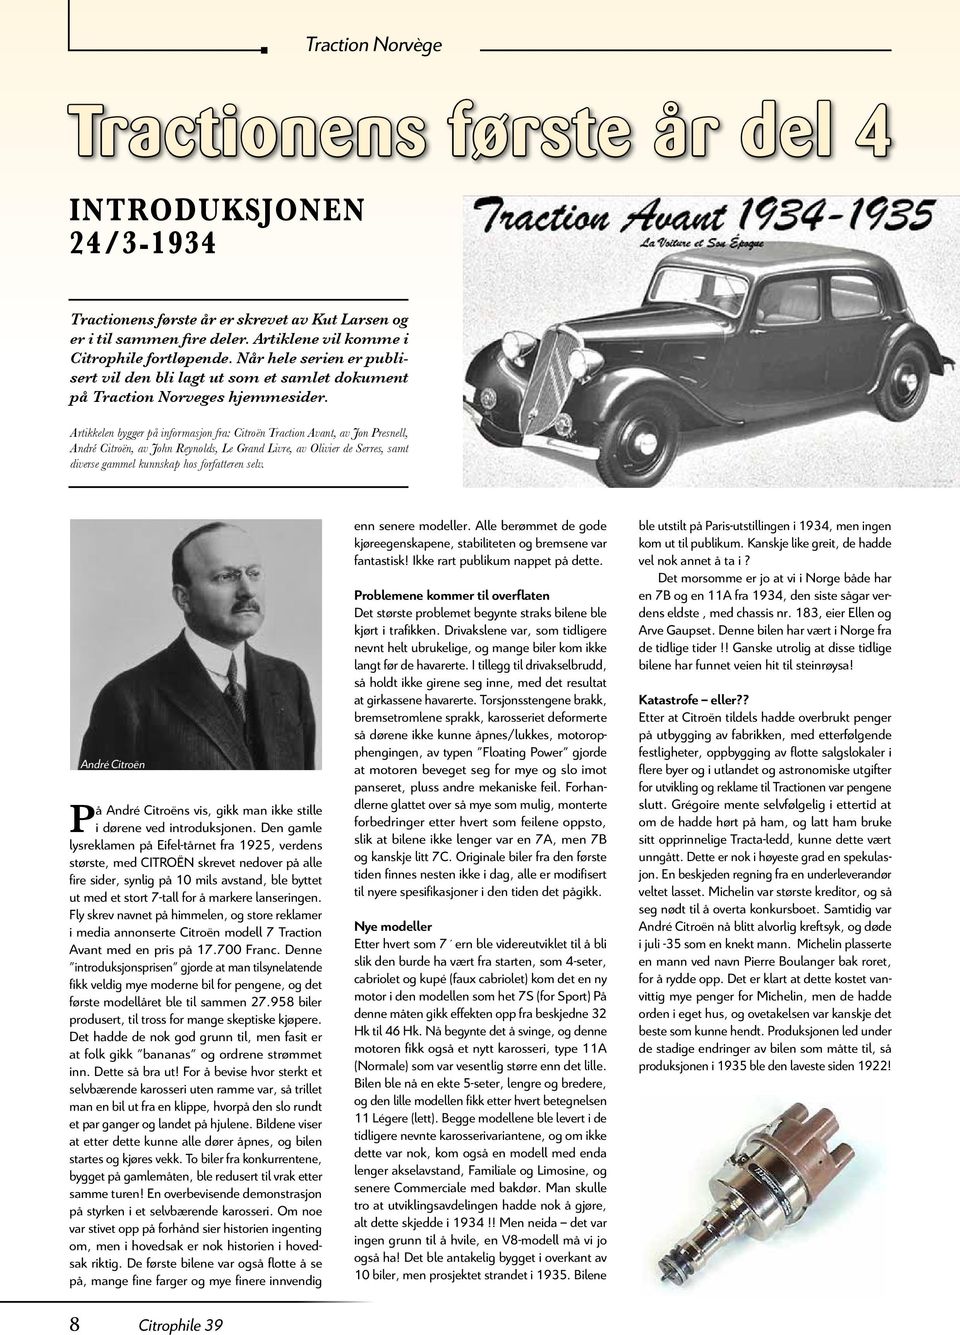 Artikkelen bygger på informasjon fra: Citroën Traction Avant, av Jon Presnell, André Citroën, av John Reynolds, Le Grand Livre, av Olivier de Serres, samt diverse gammel kunnskap hos forfatteren selv.